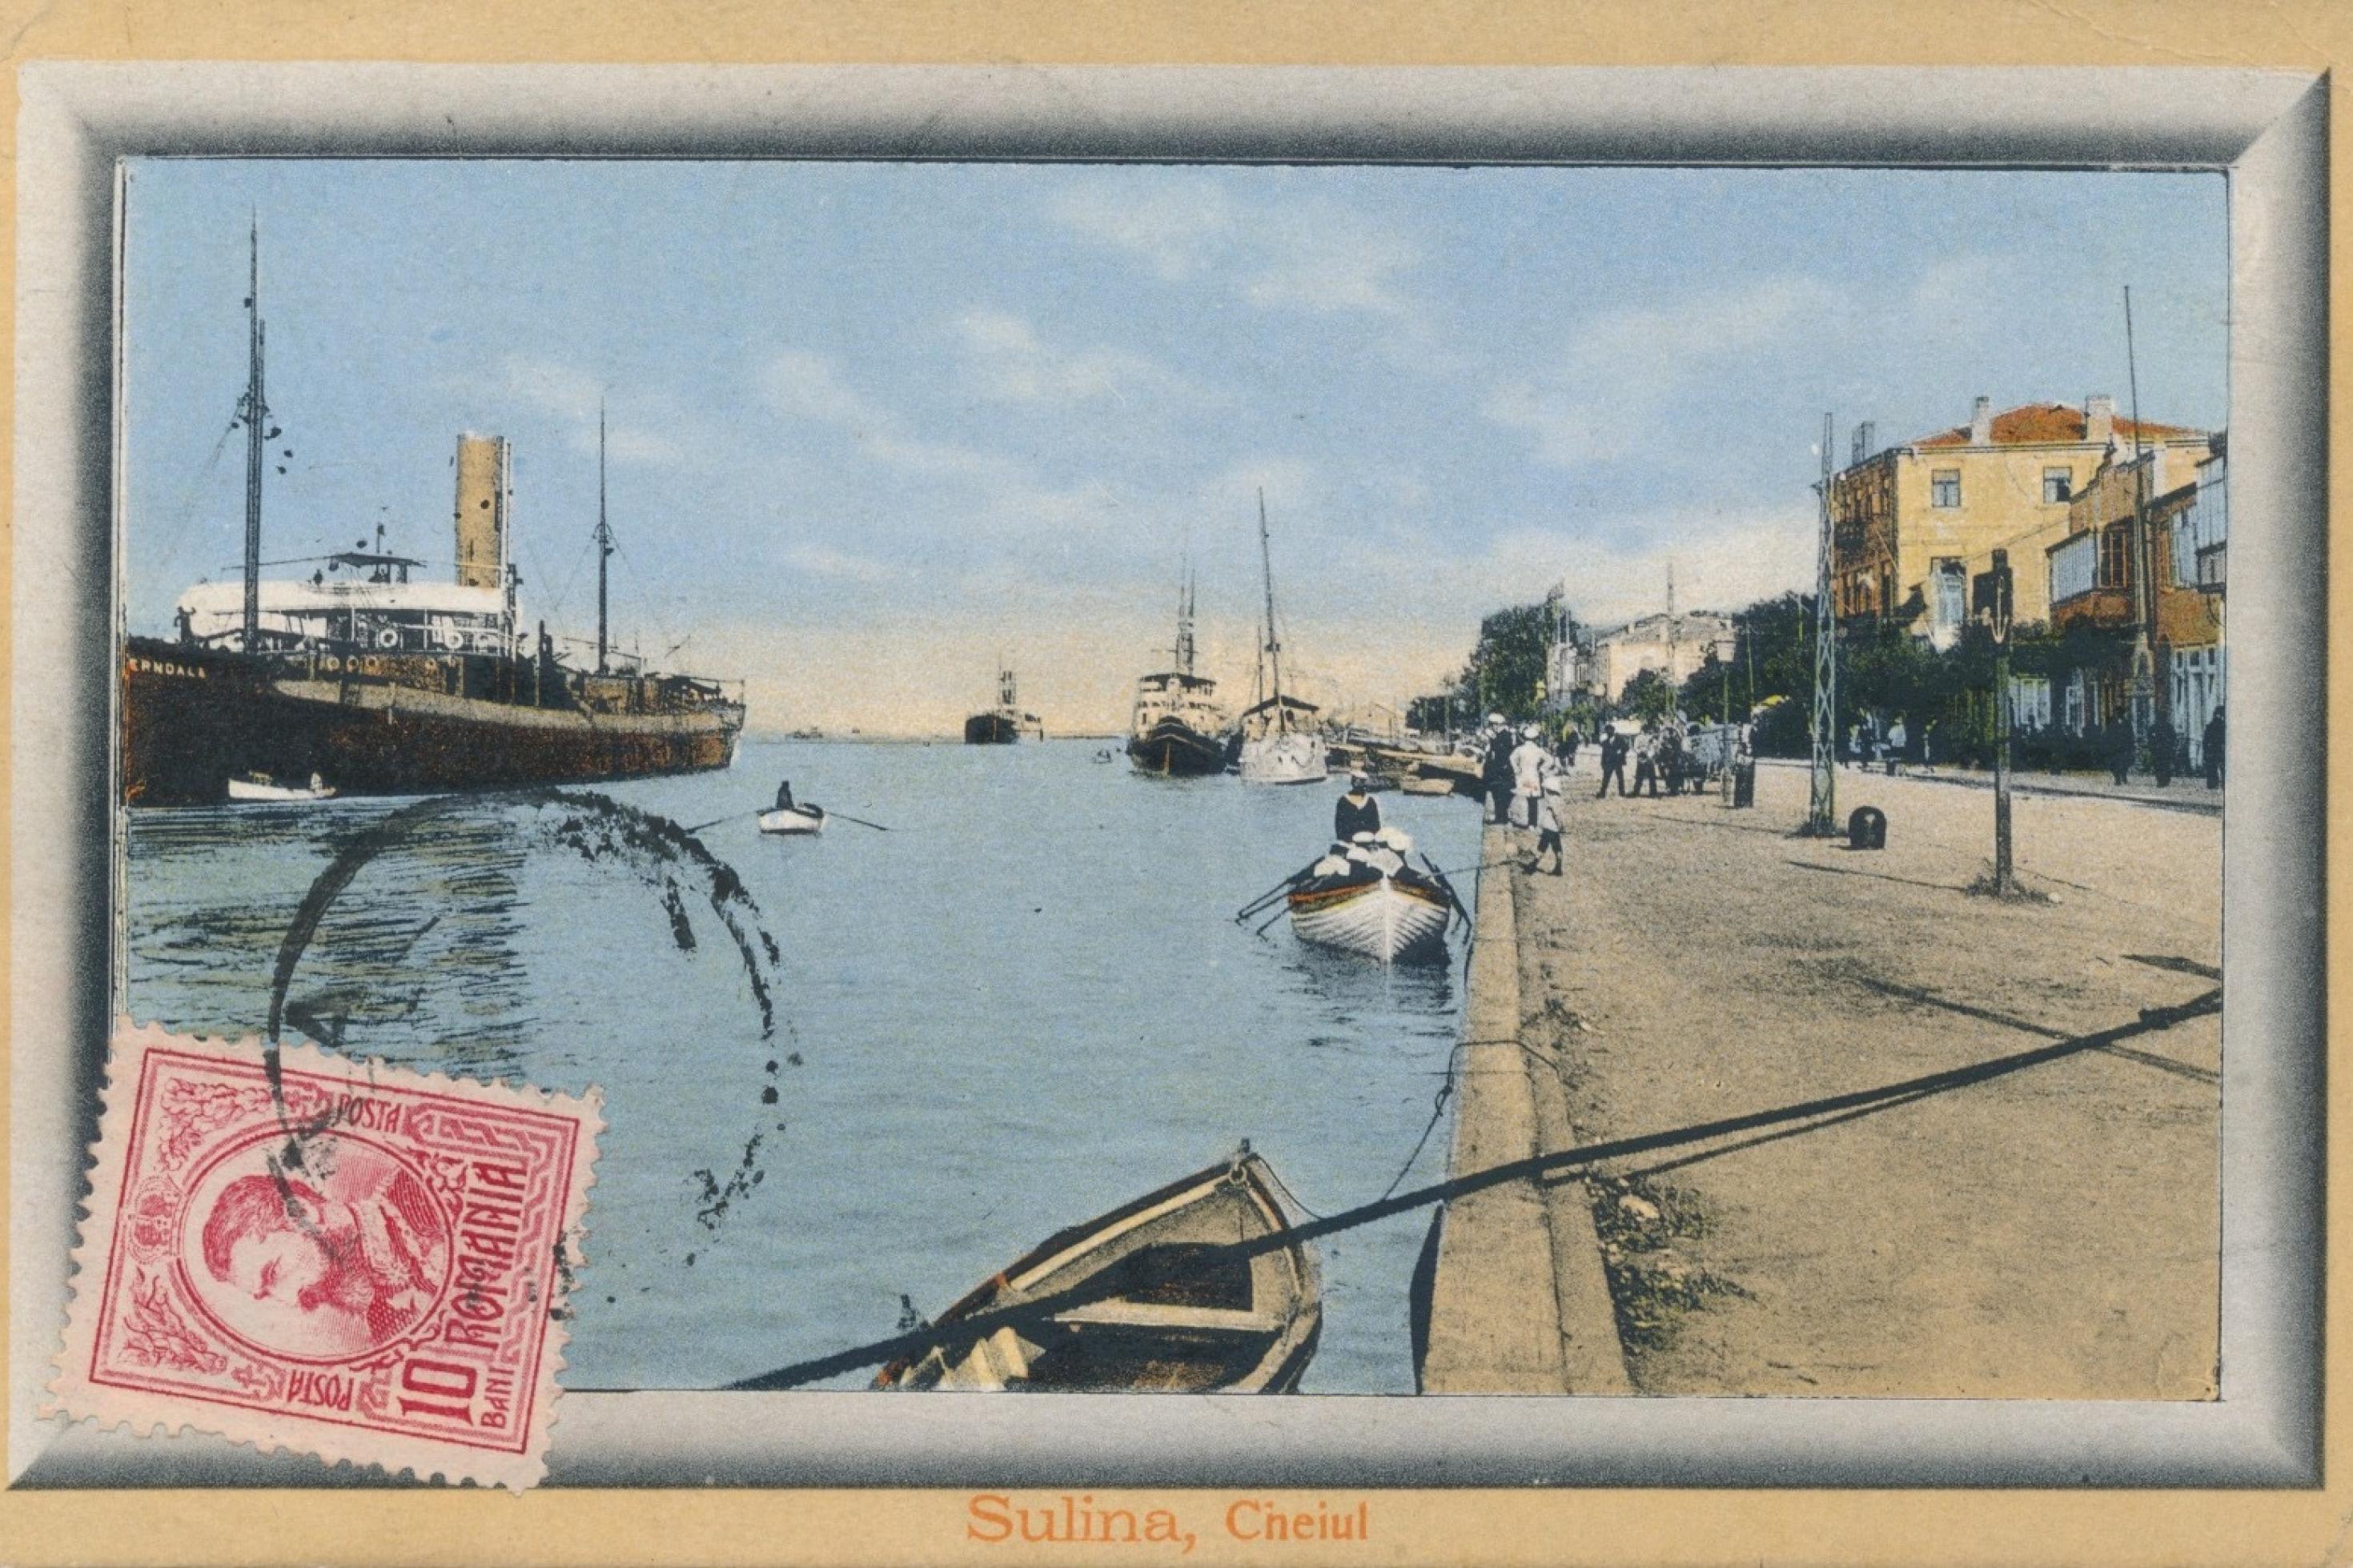 Alte illustrierte Postkarte mit Briefmarke mit Fluss, Häusern, Schiffen, Menschen